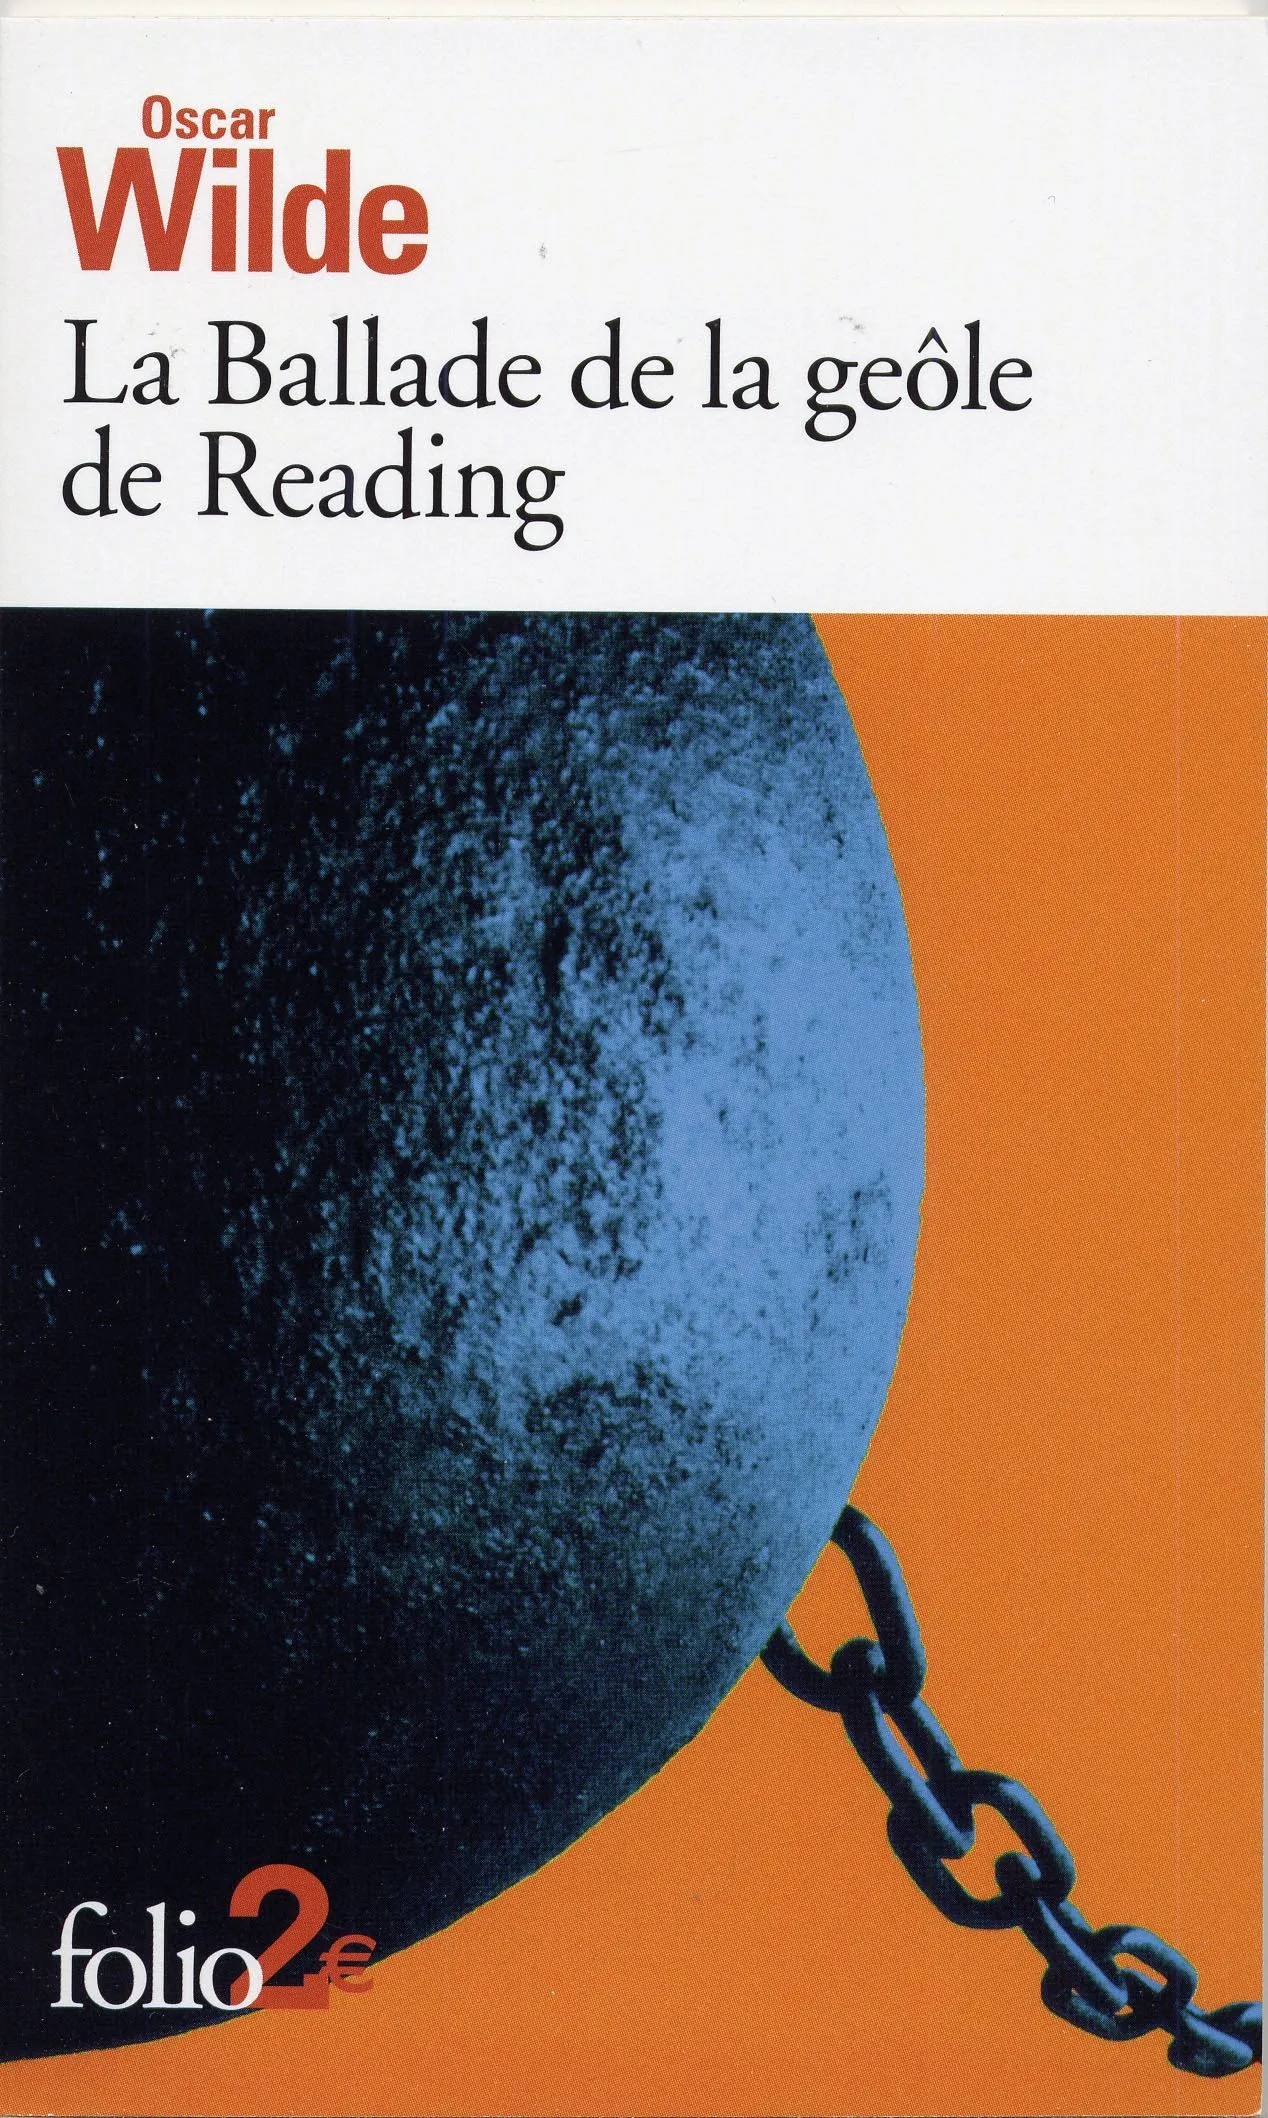 Oscar Wilde, La Ballade de la gêole de Reading, 1898, Éditions Gallimard, coll. Folio 